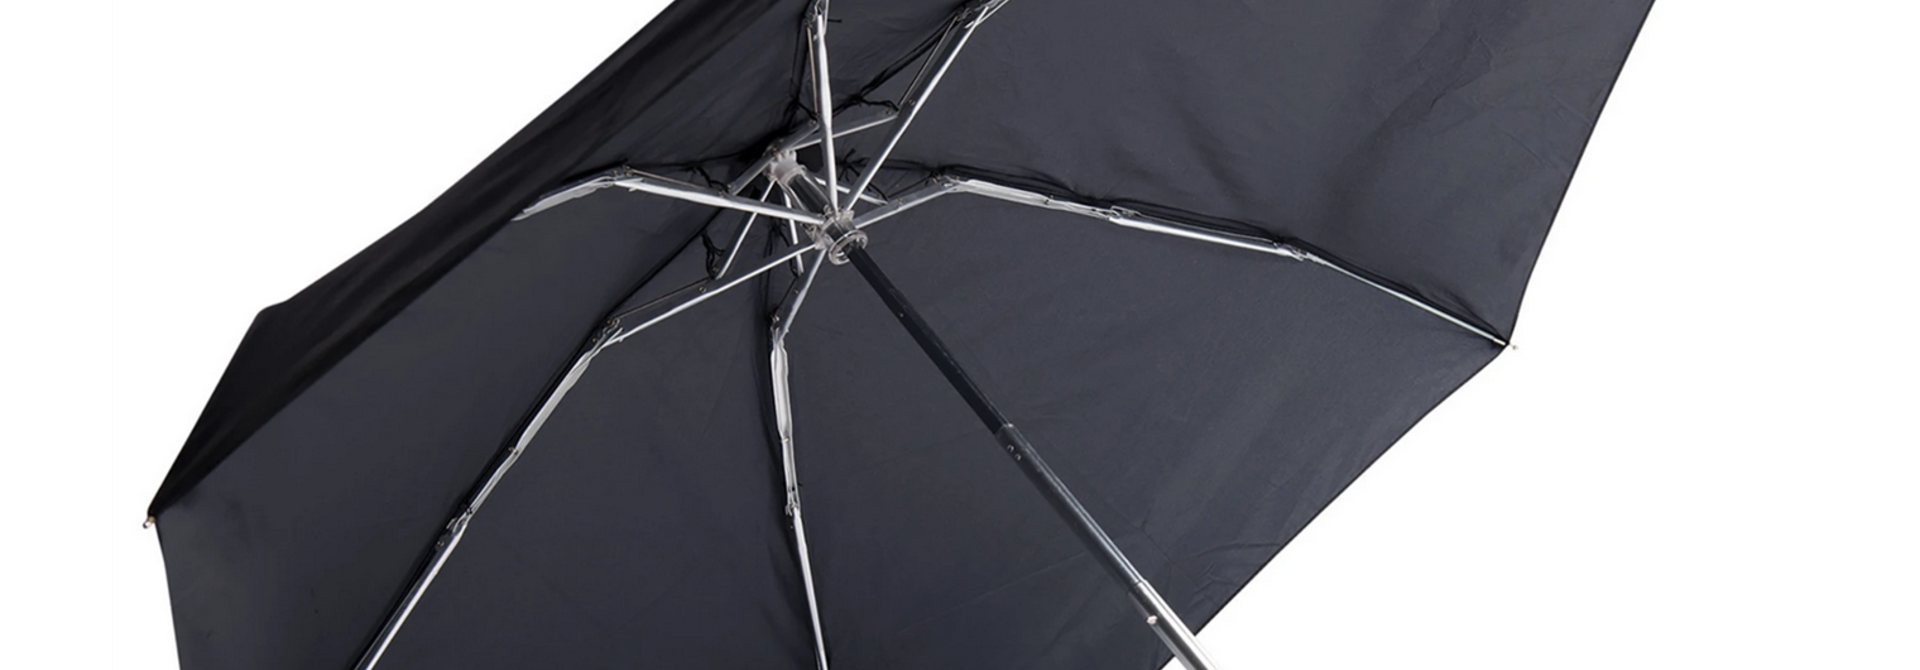 Travelling Light Pocket Umbrella, Black